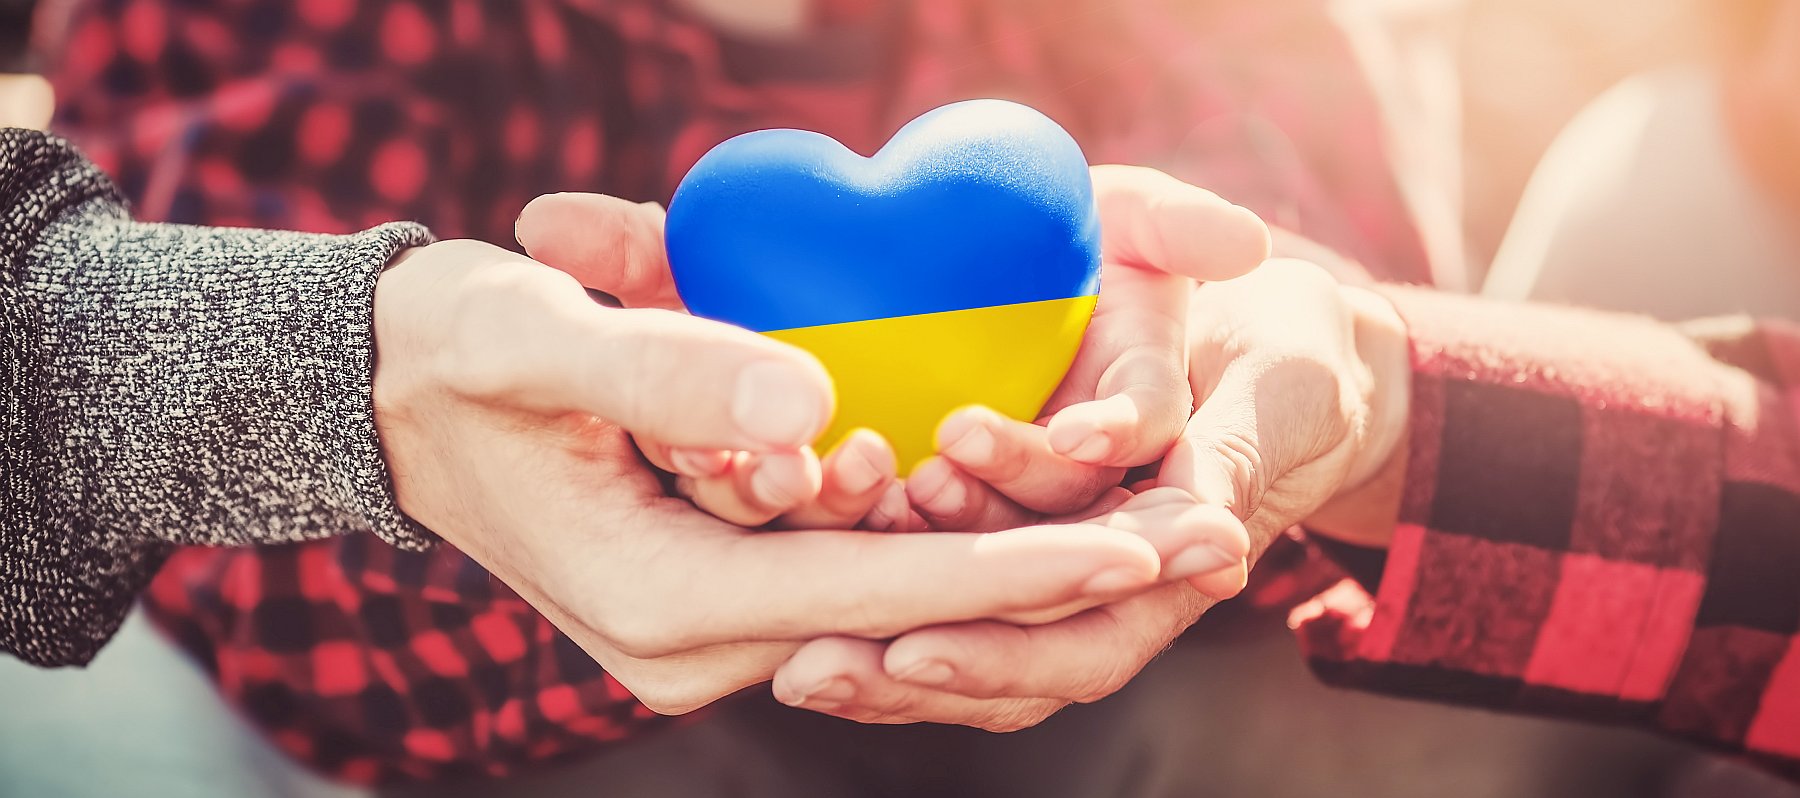 Mehrere Hände halten ein Herz, das in den Farben der Ukraine bemahlt ist: Oben blau unten gelb